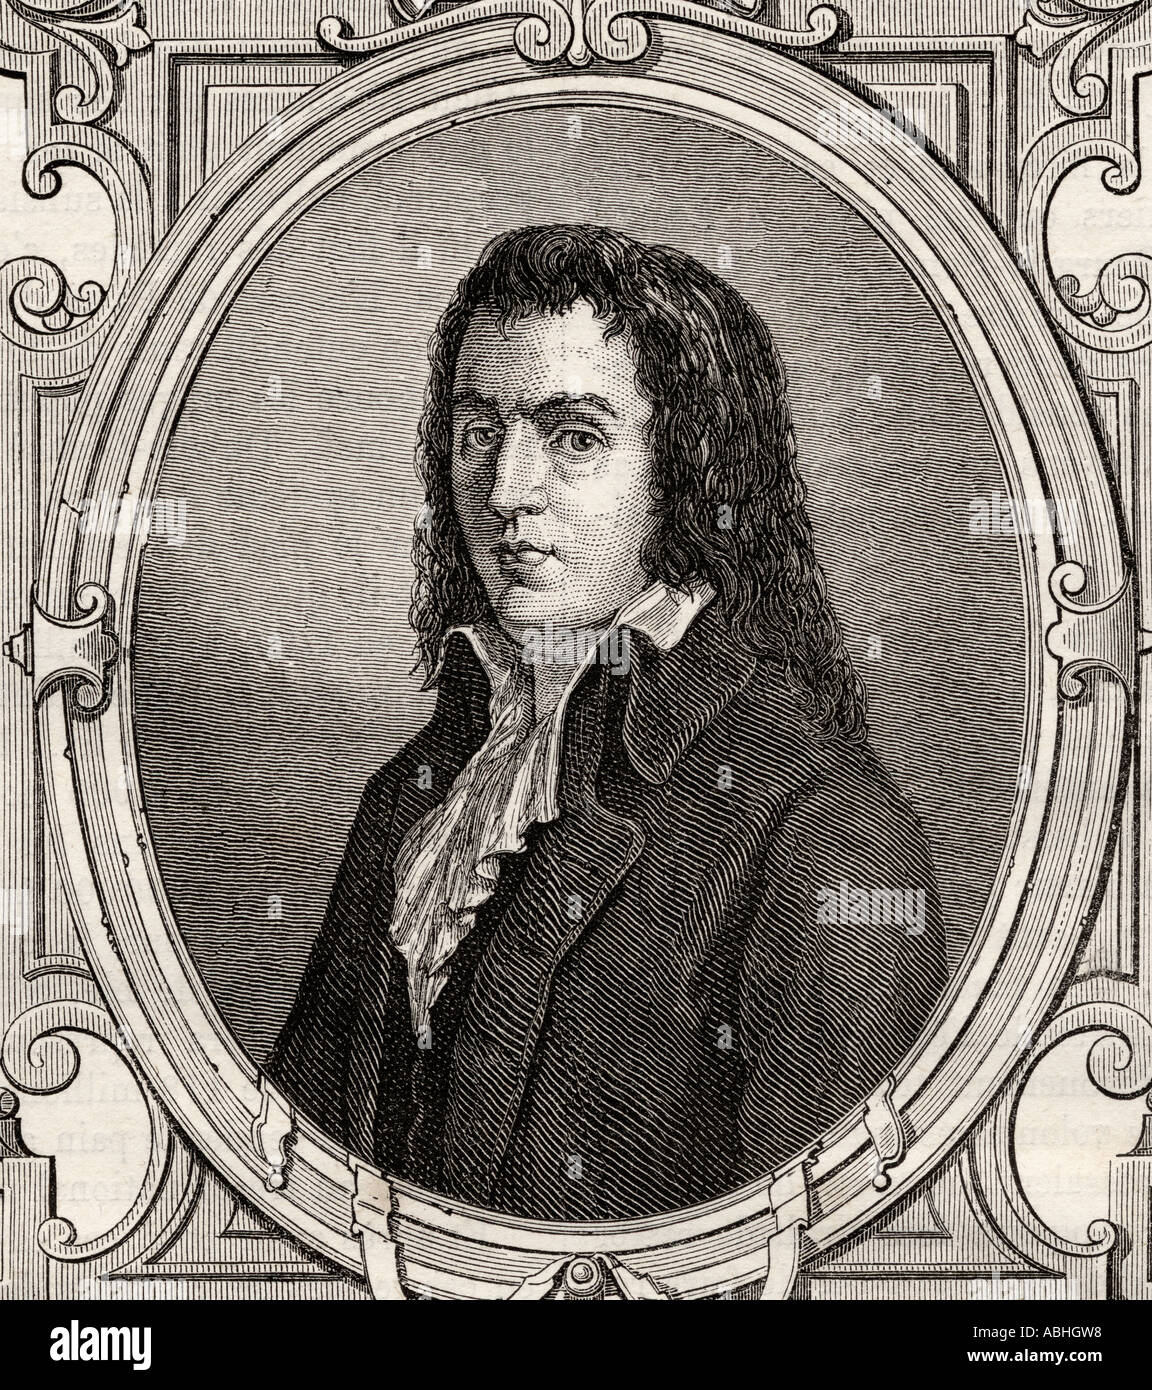 François-Noël Babeuf, 1760 - 1760, alias Gracchus oder Gracus. Französischer politischer Agitator und Journalist während der französischen Revolution. Stockfoto